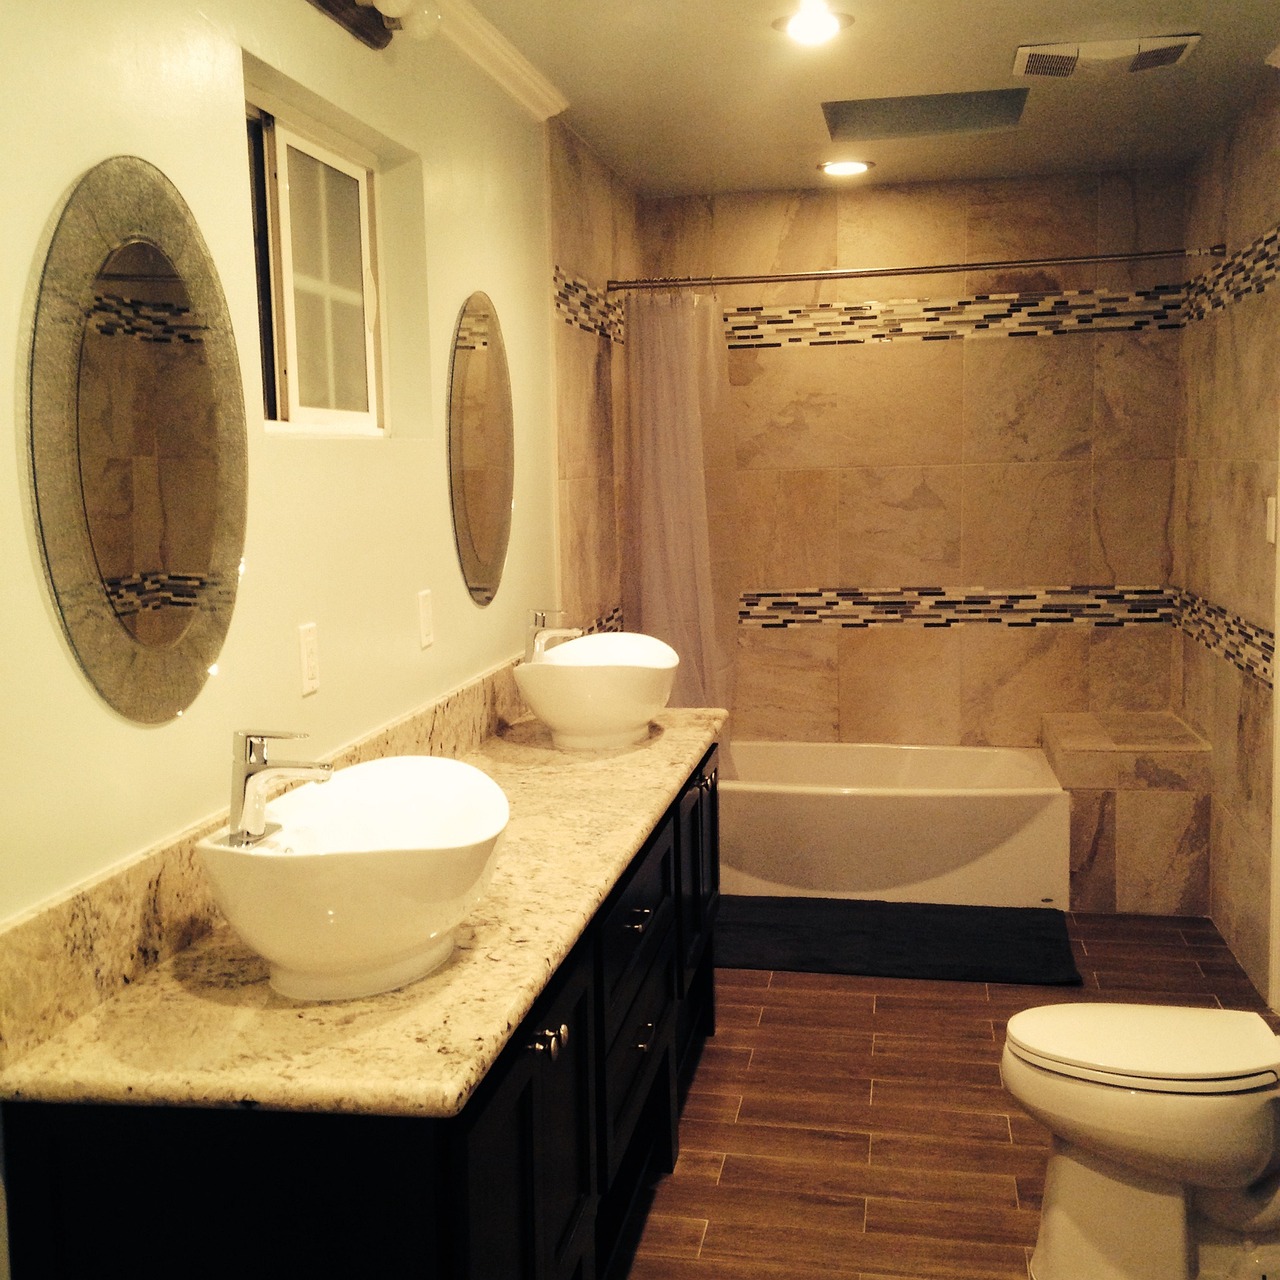 En este momento estás viendo Decoración de baños: Diseño y funcionalidad en espacios de higiene